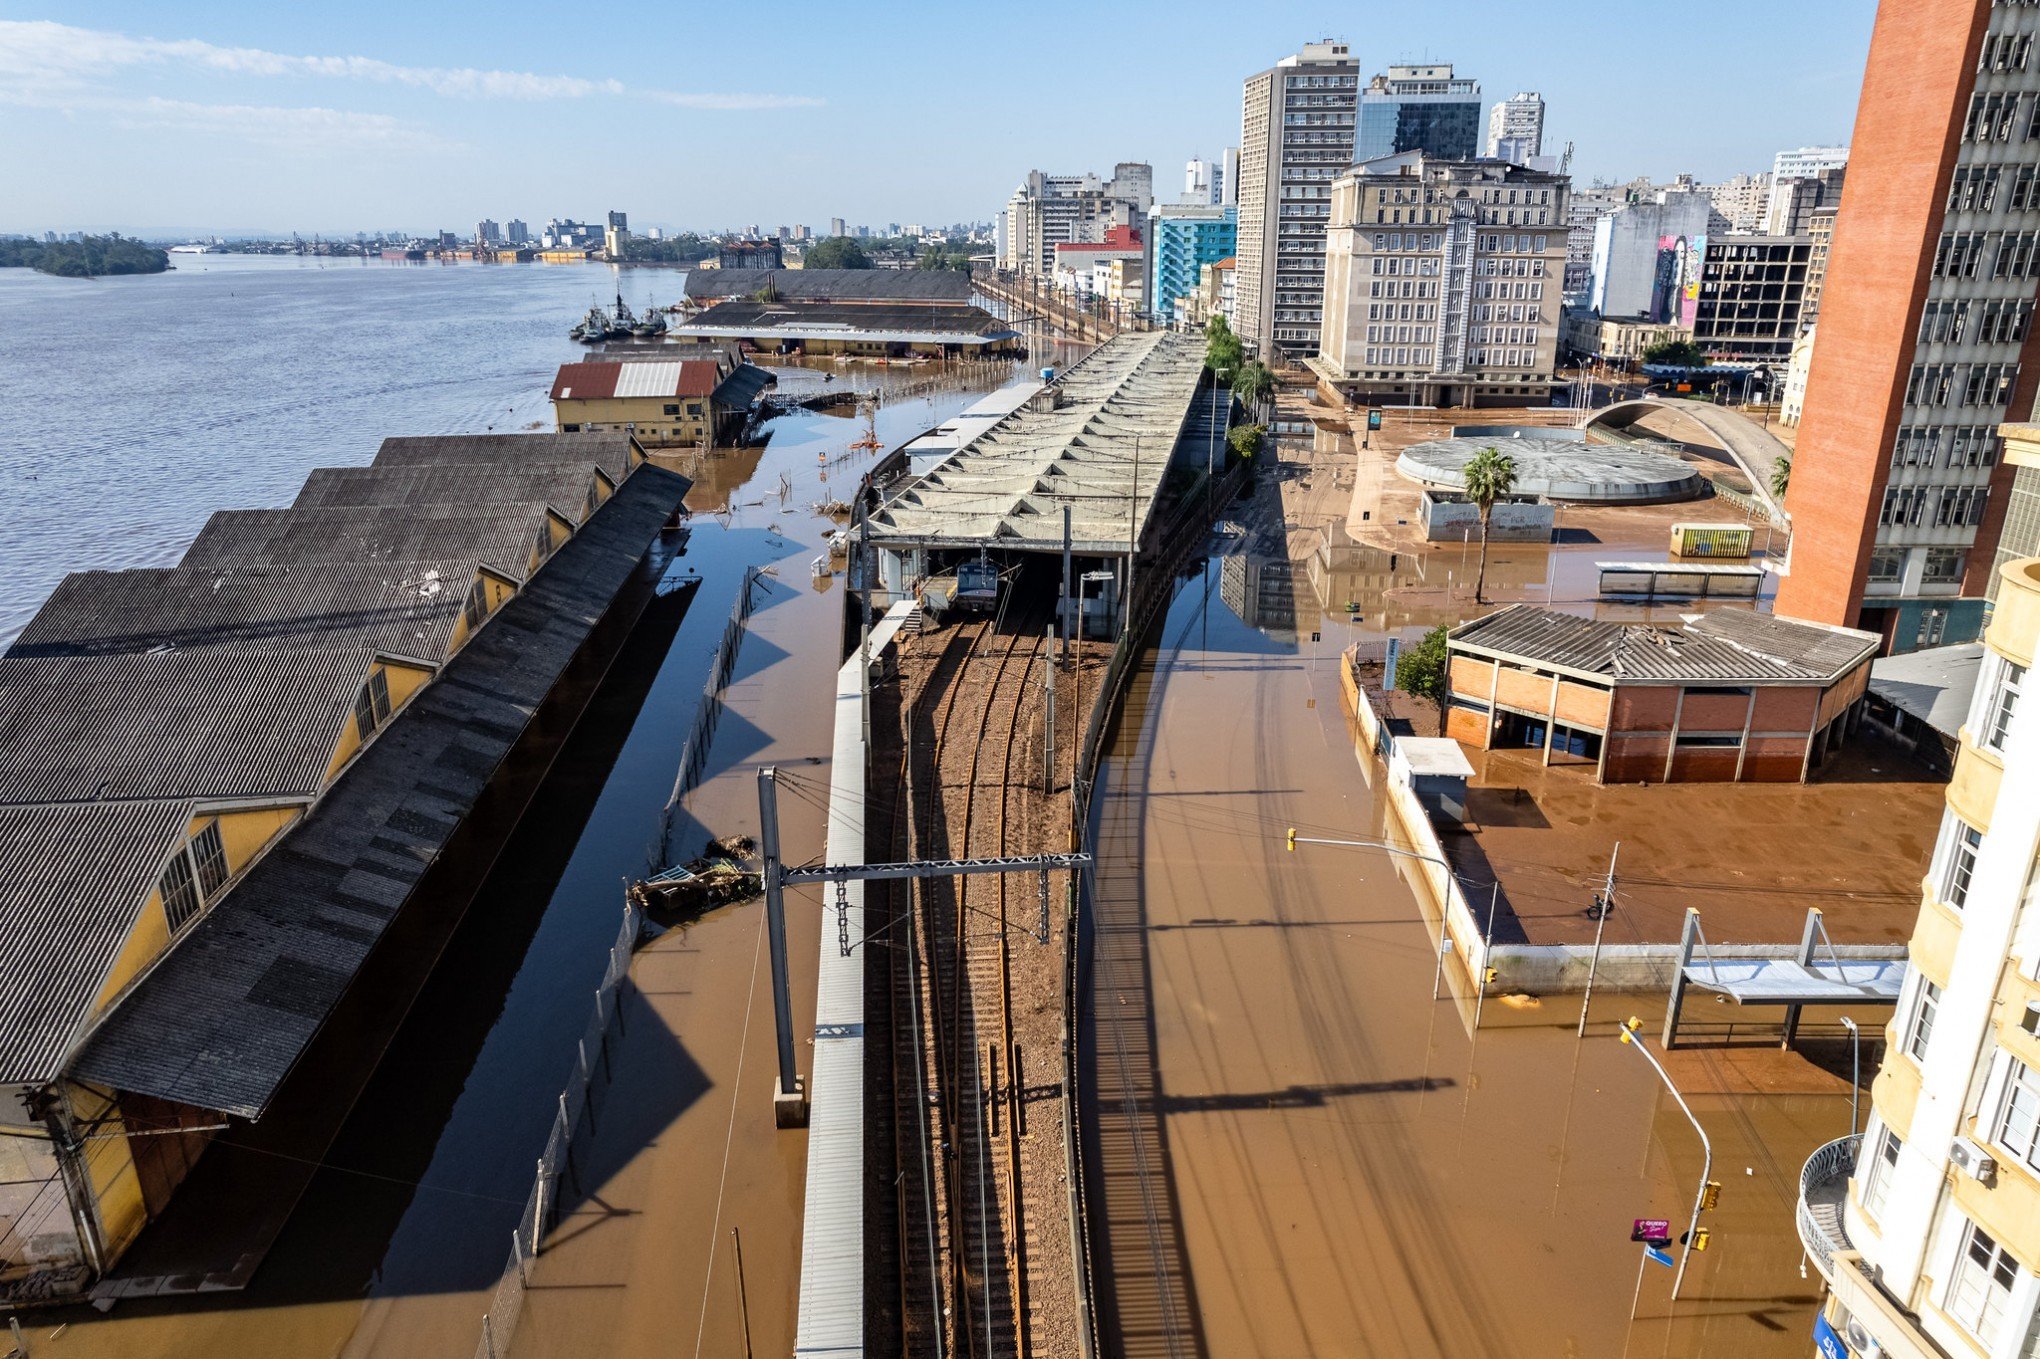 Enchente levou R$ 7,4 bilhões da economia gaúcha em maio, calcula CDL de Porto Alegre